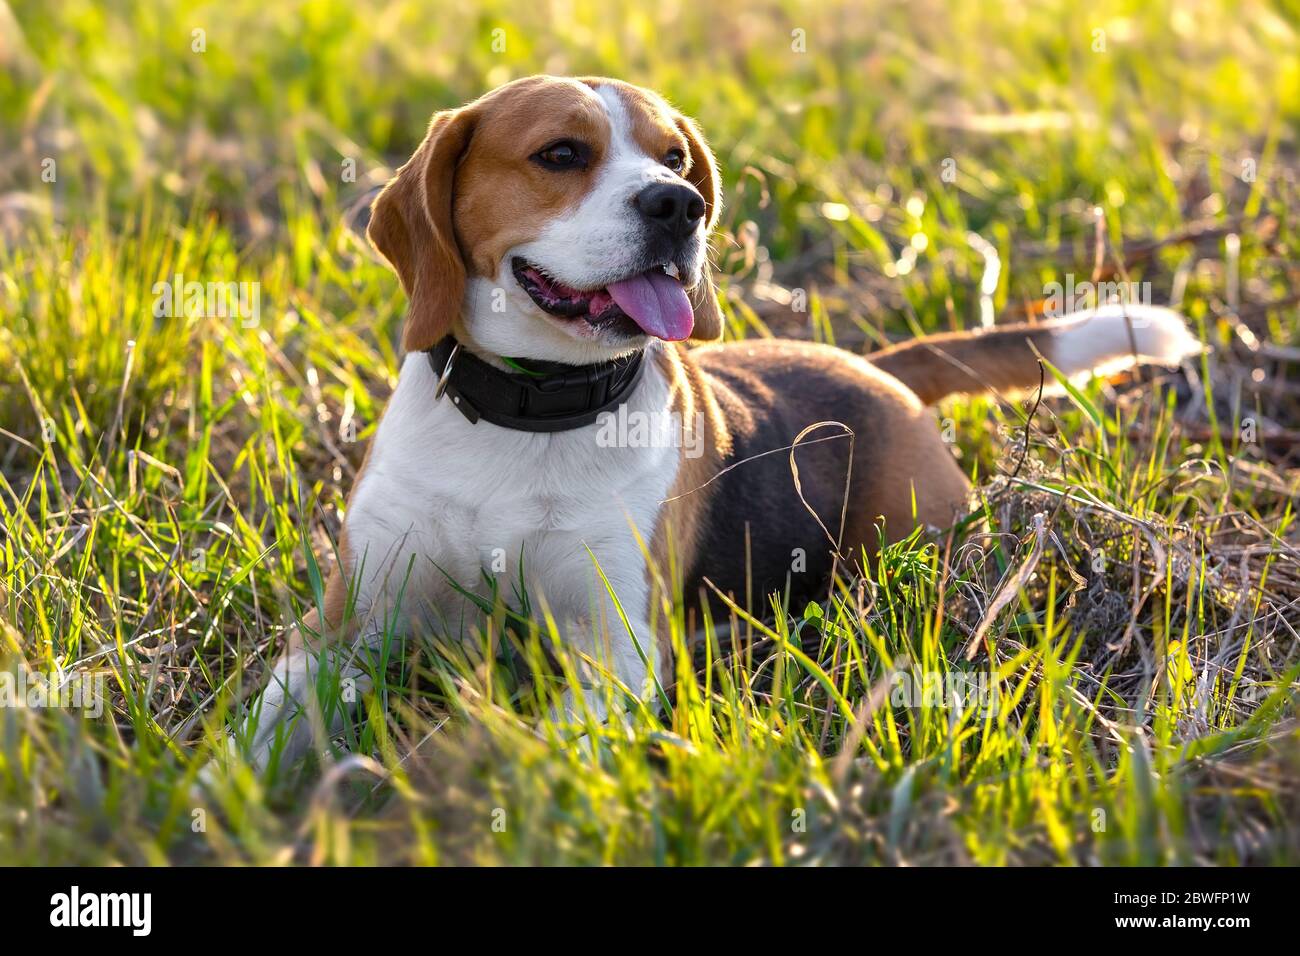 Lindo perro beagle tumbado en la hierba Foto de stock